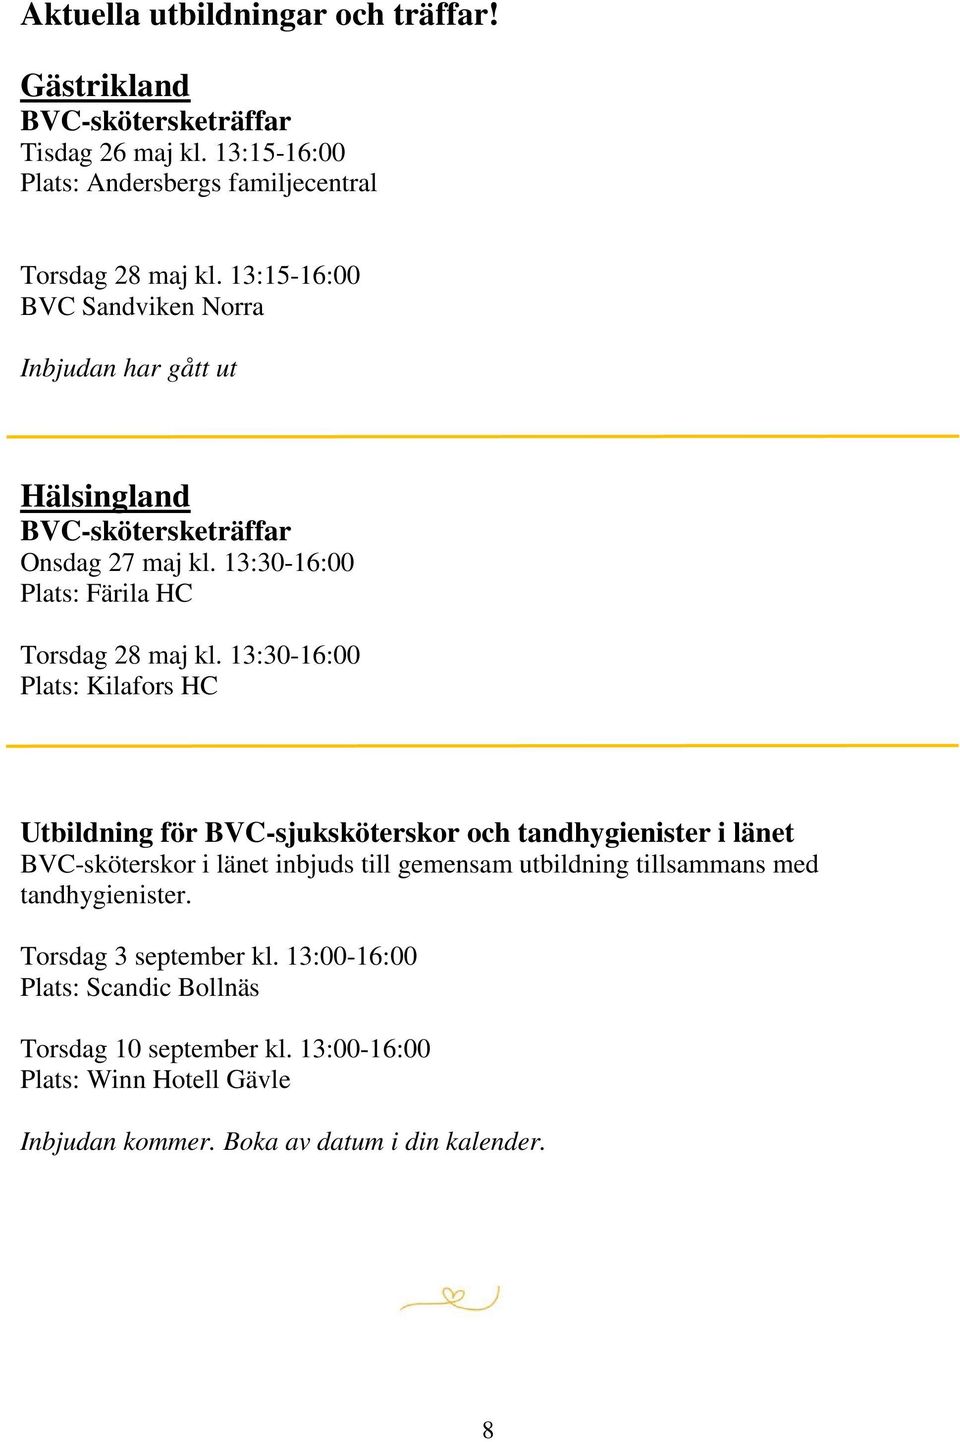 13:30-16:00 Plats: Kilafors HC Utbildning för BVC-sjuksköterskor och tandhygienister i länet BVC-sköterskor i länet inbjuds till gemensam utbildning tillsammans